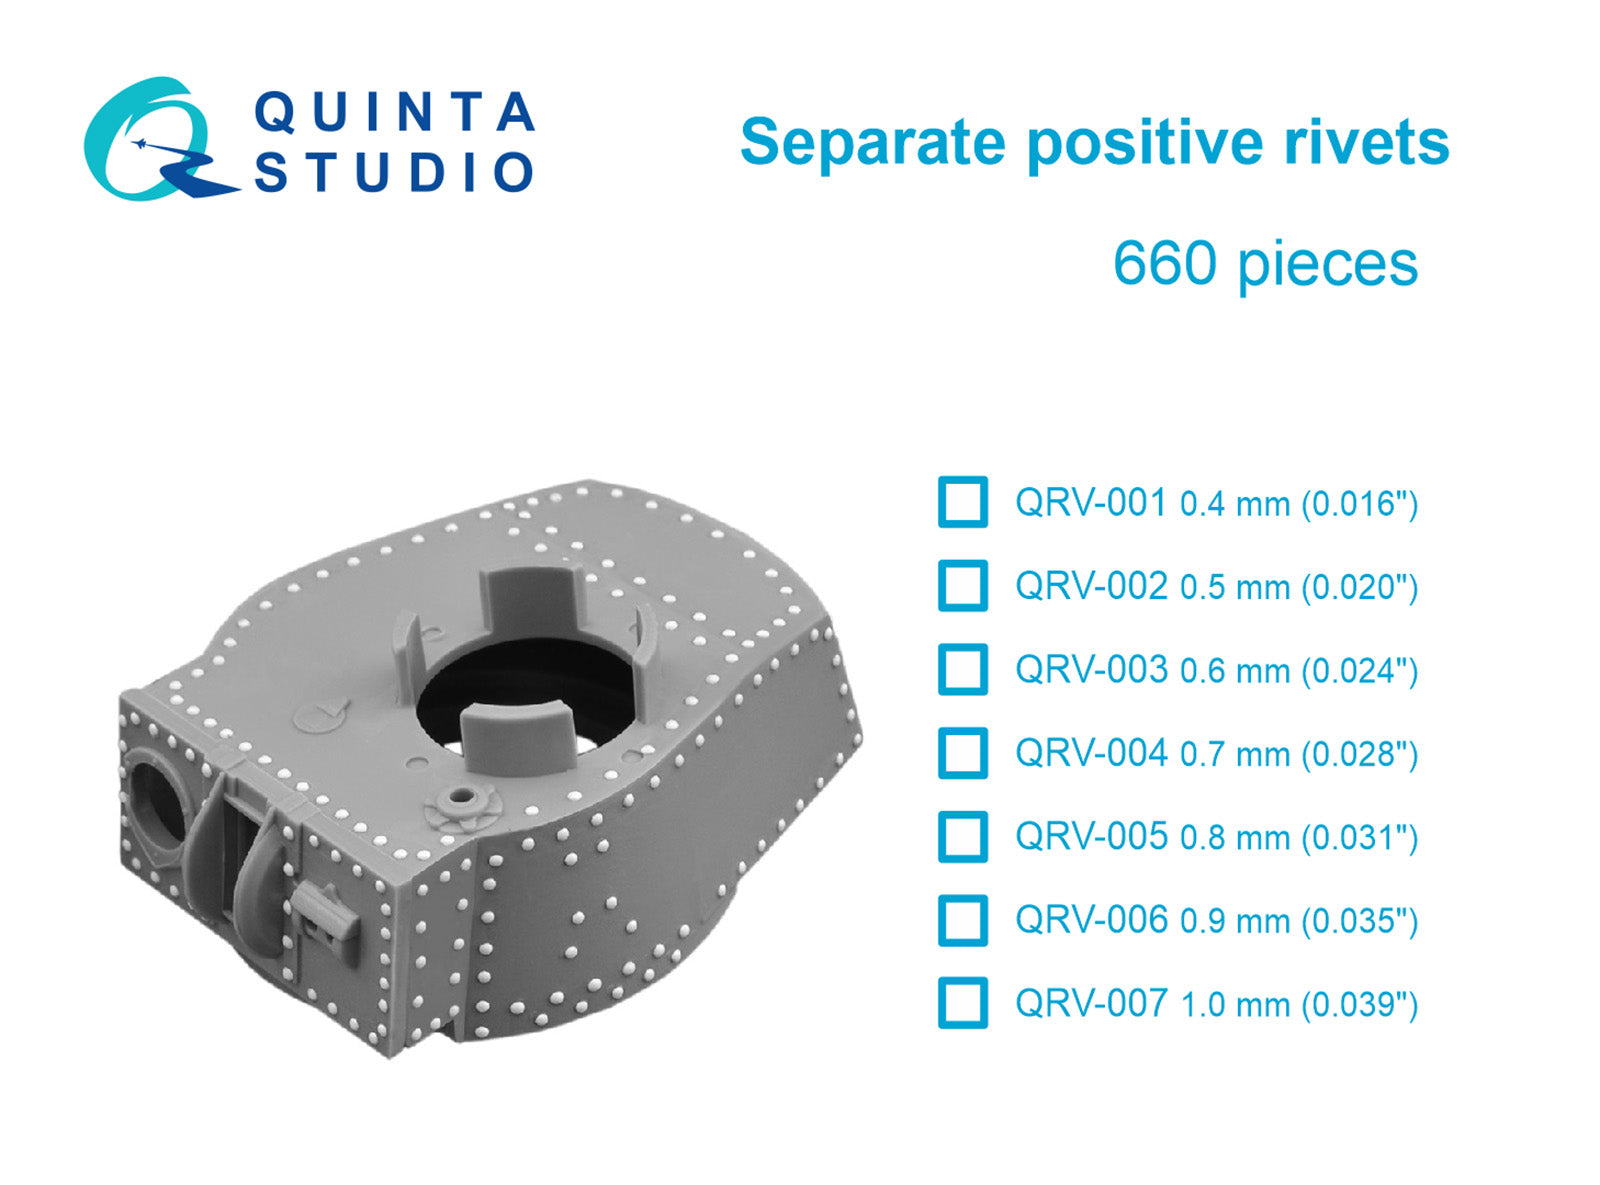 Quinta Studio - Separate positive rivets, 0.5mm (0.020") 660 pcs QRV-002